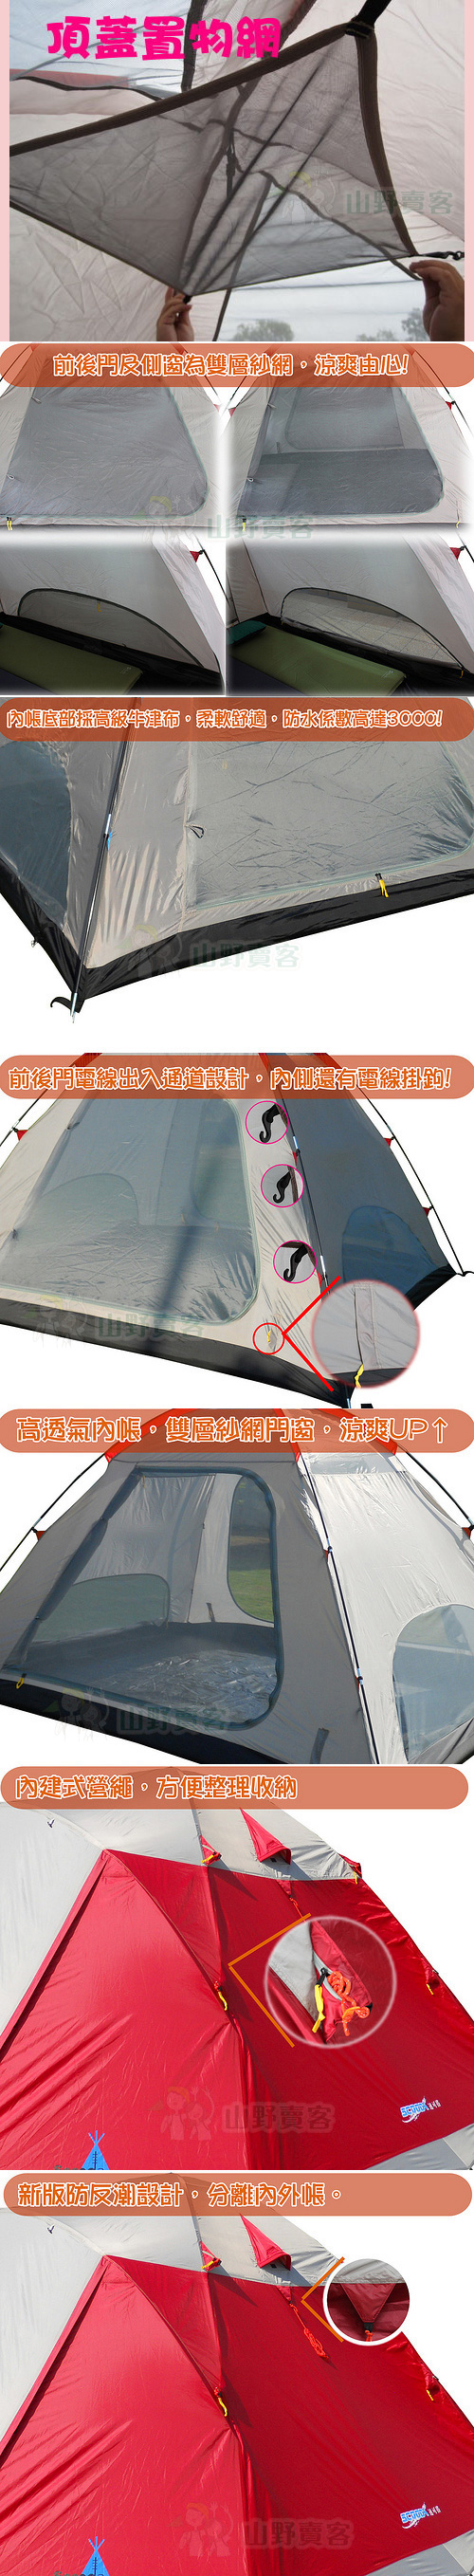 速可搭 2014 大溪地 6~8人前庭帳篷 銀膠帳篷 露營帳篷 搭設容易高防水 送防潮地墊